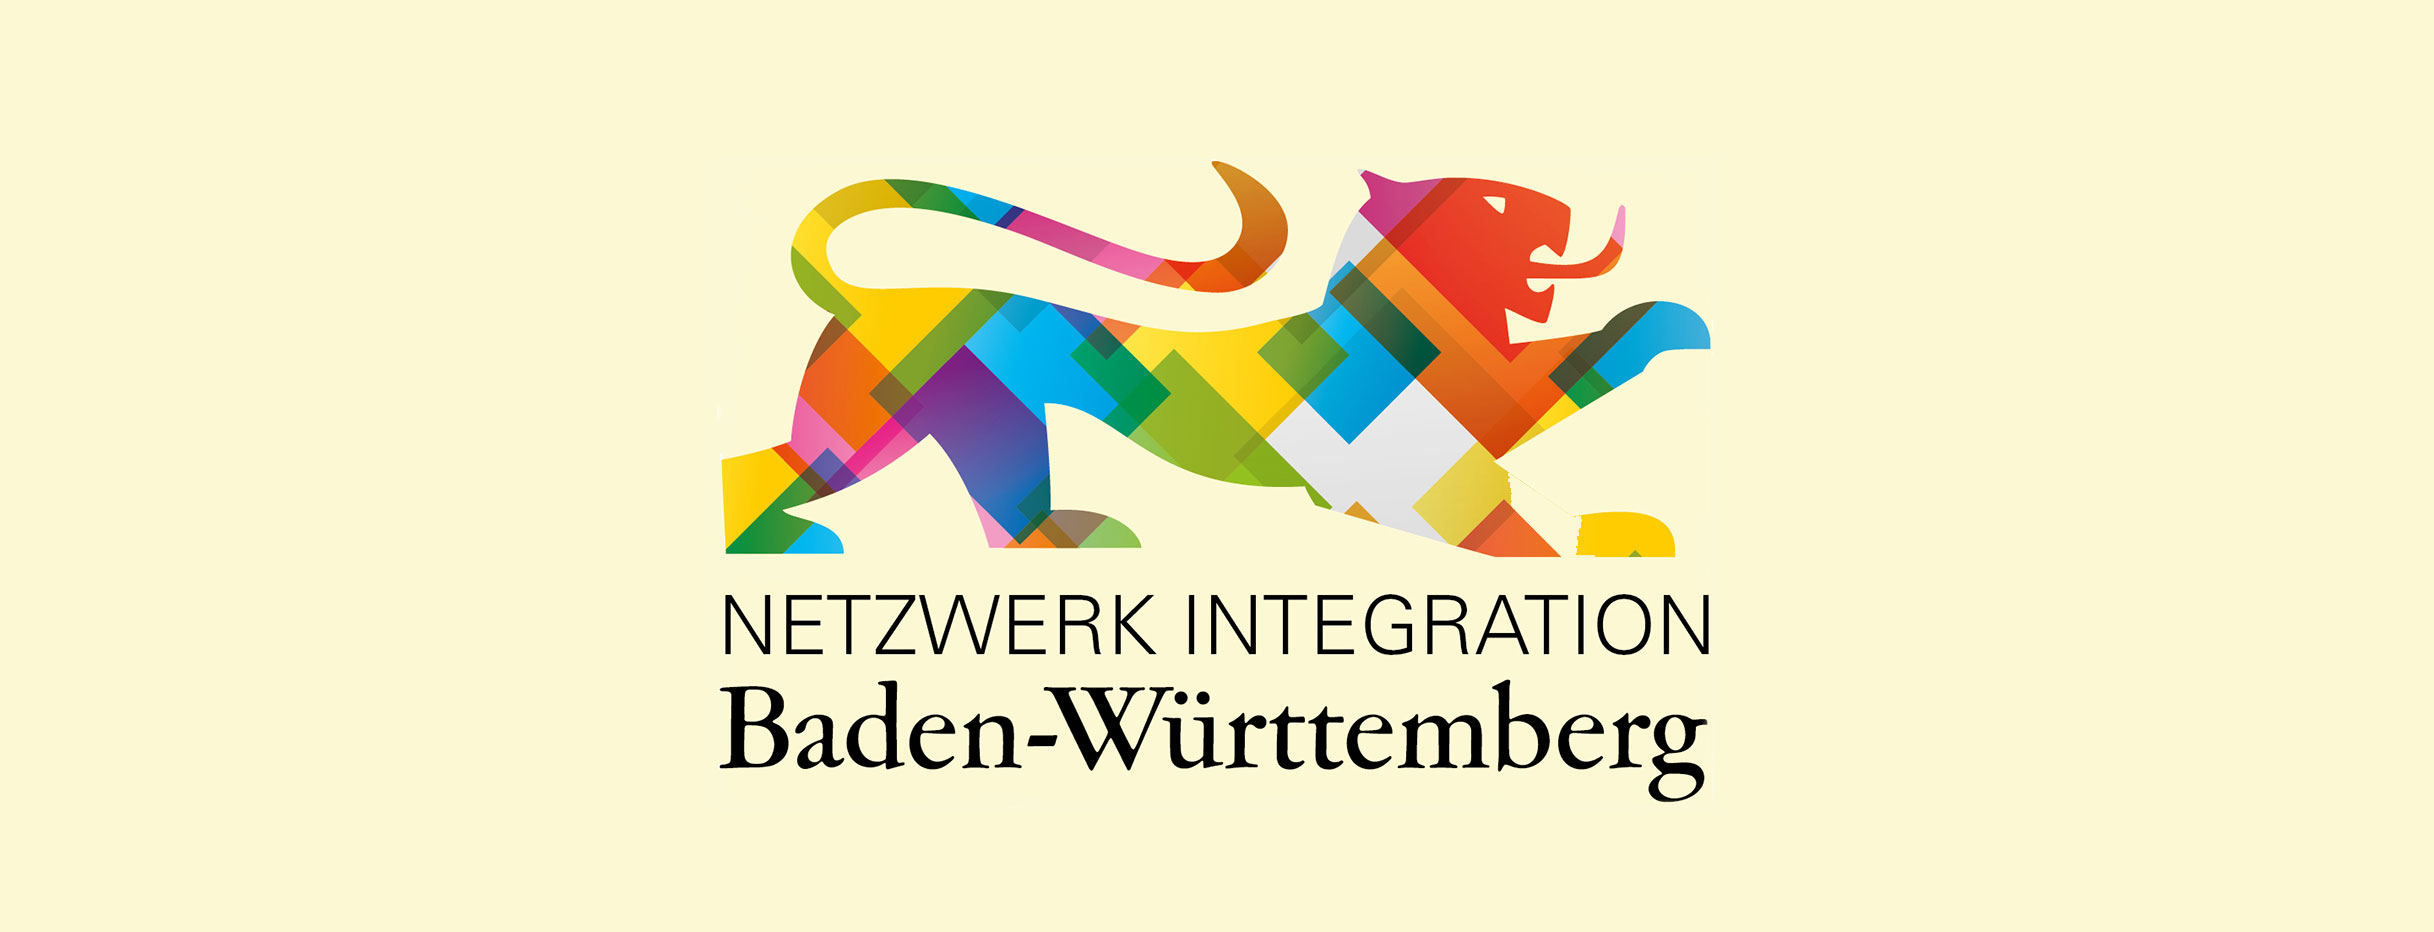 Bunter Löwenumriss mit Slogan "Netzwerk Integration Baden-Württemberg"